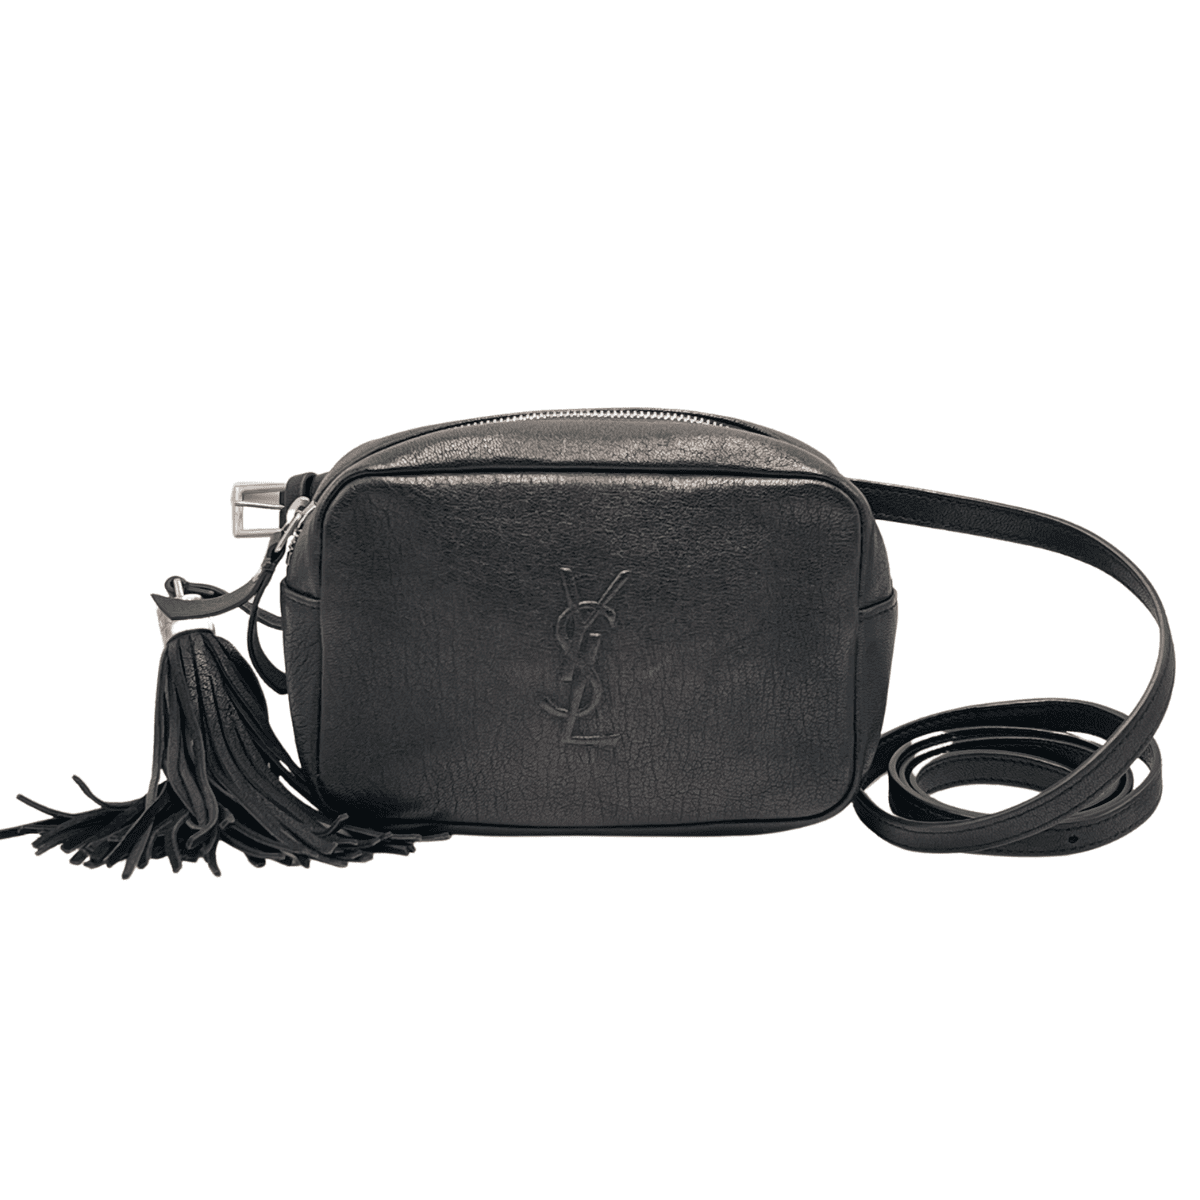 YSL Belt Bag – Pre Porter